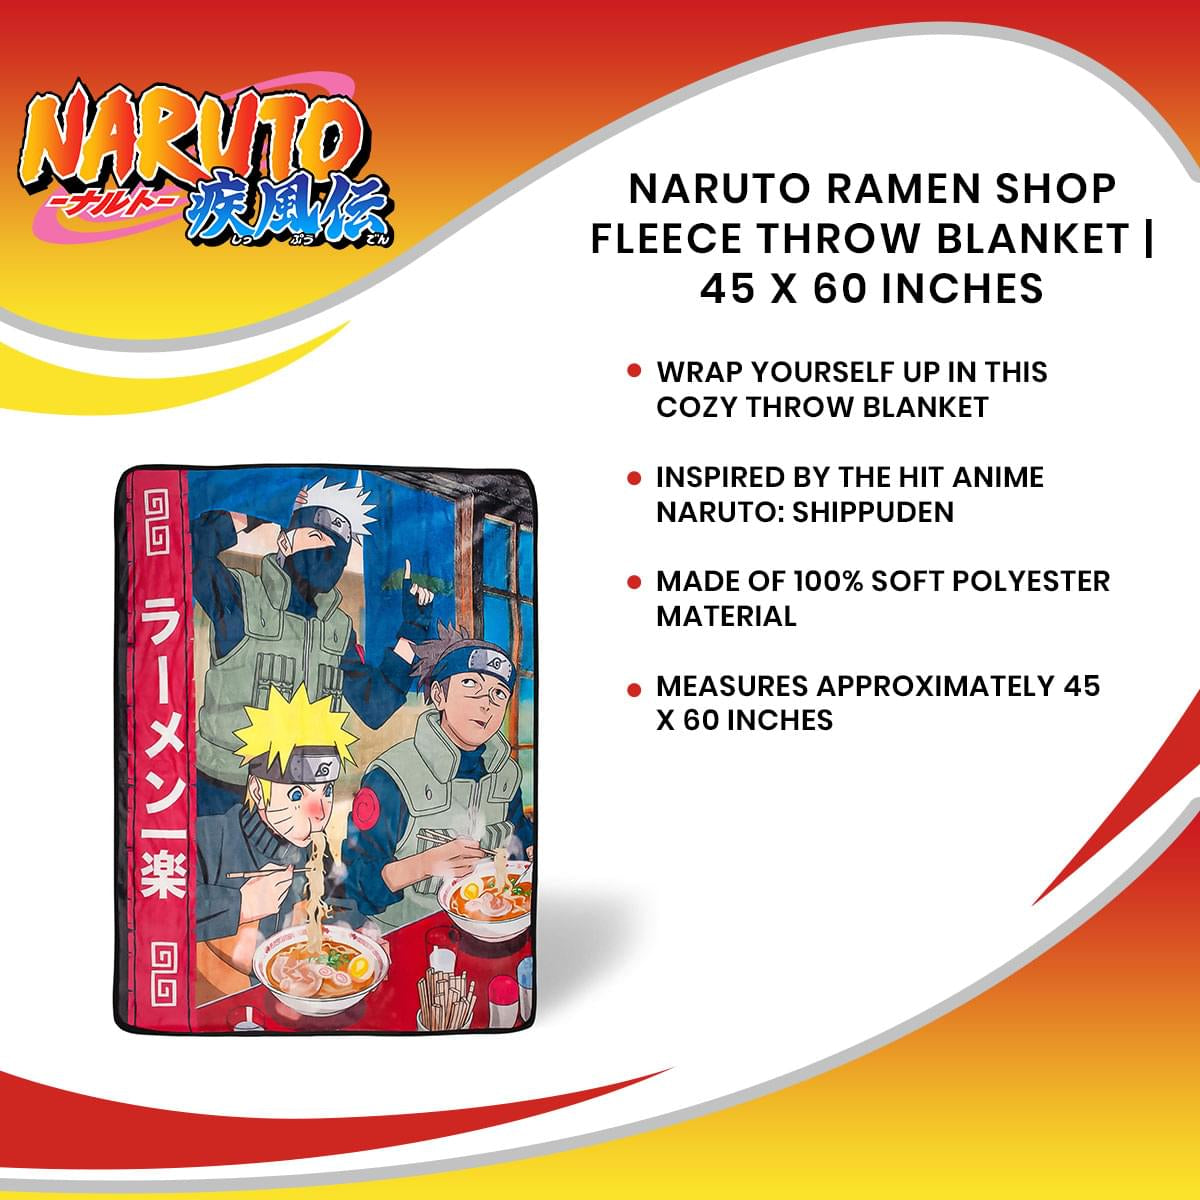 Naruto Ramen Shop Fleece Throw Blanket | 45 x 60 Inches